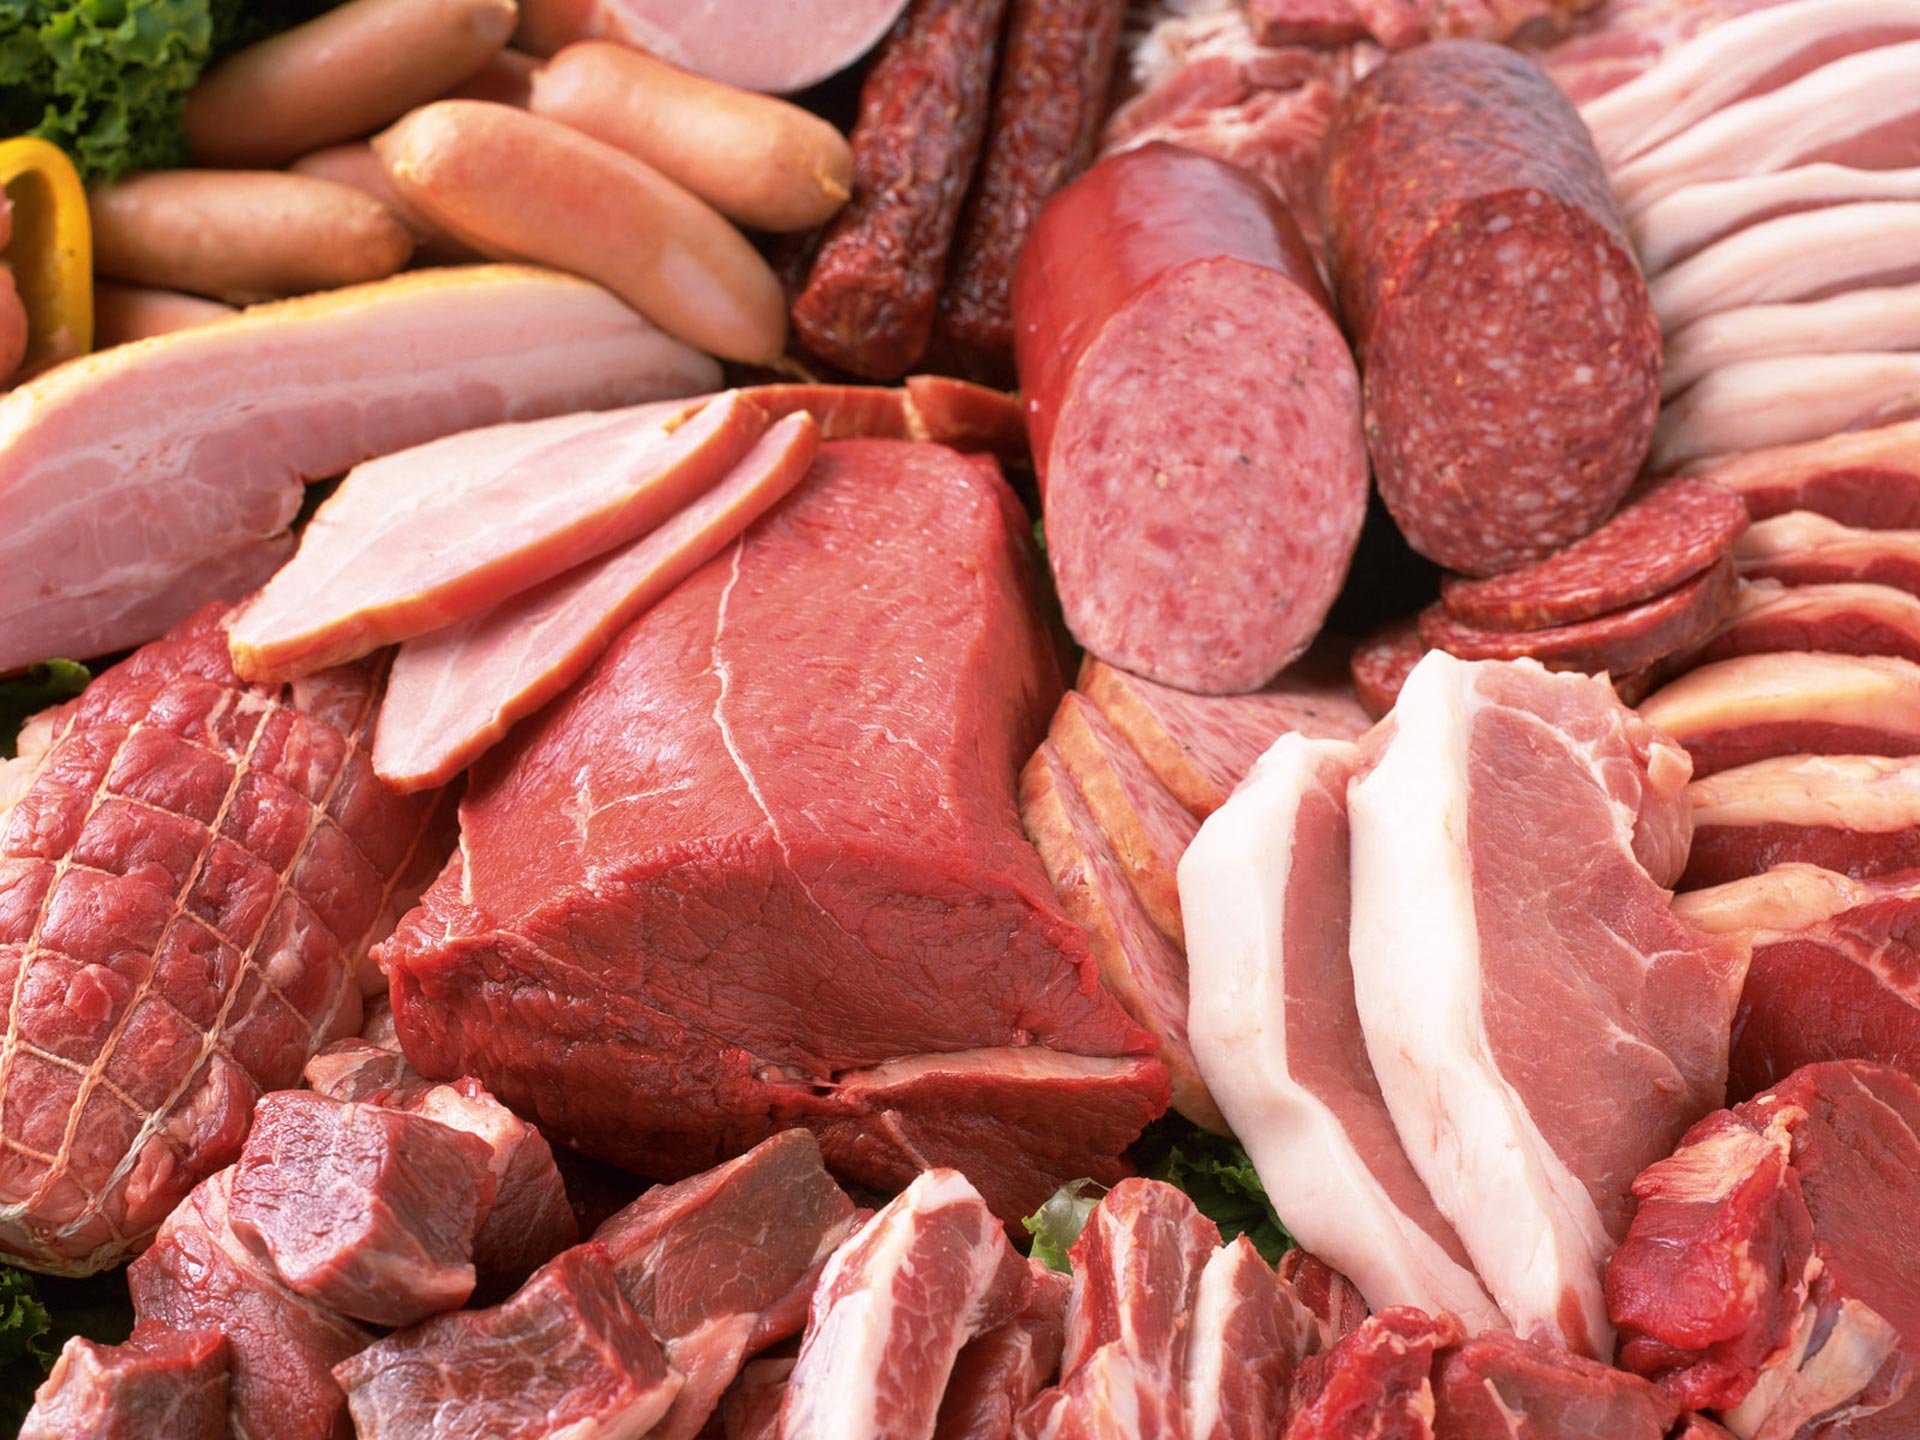 Купить мясо для ресторана или же любой вид мяса, начиная от говядины, свини...